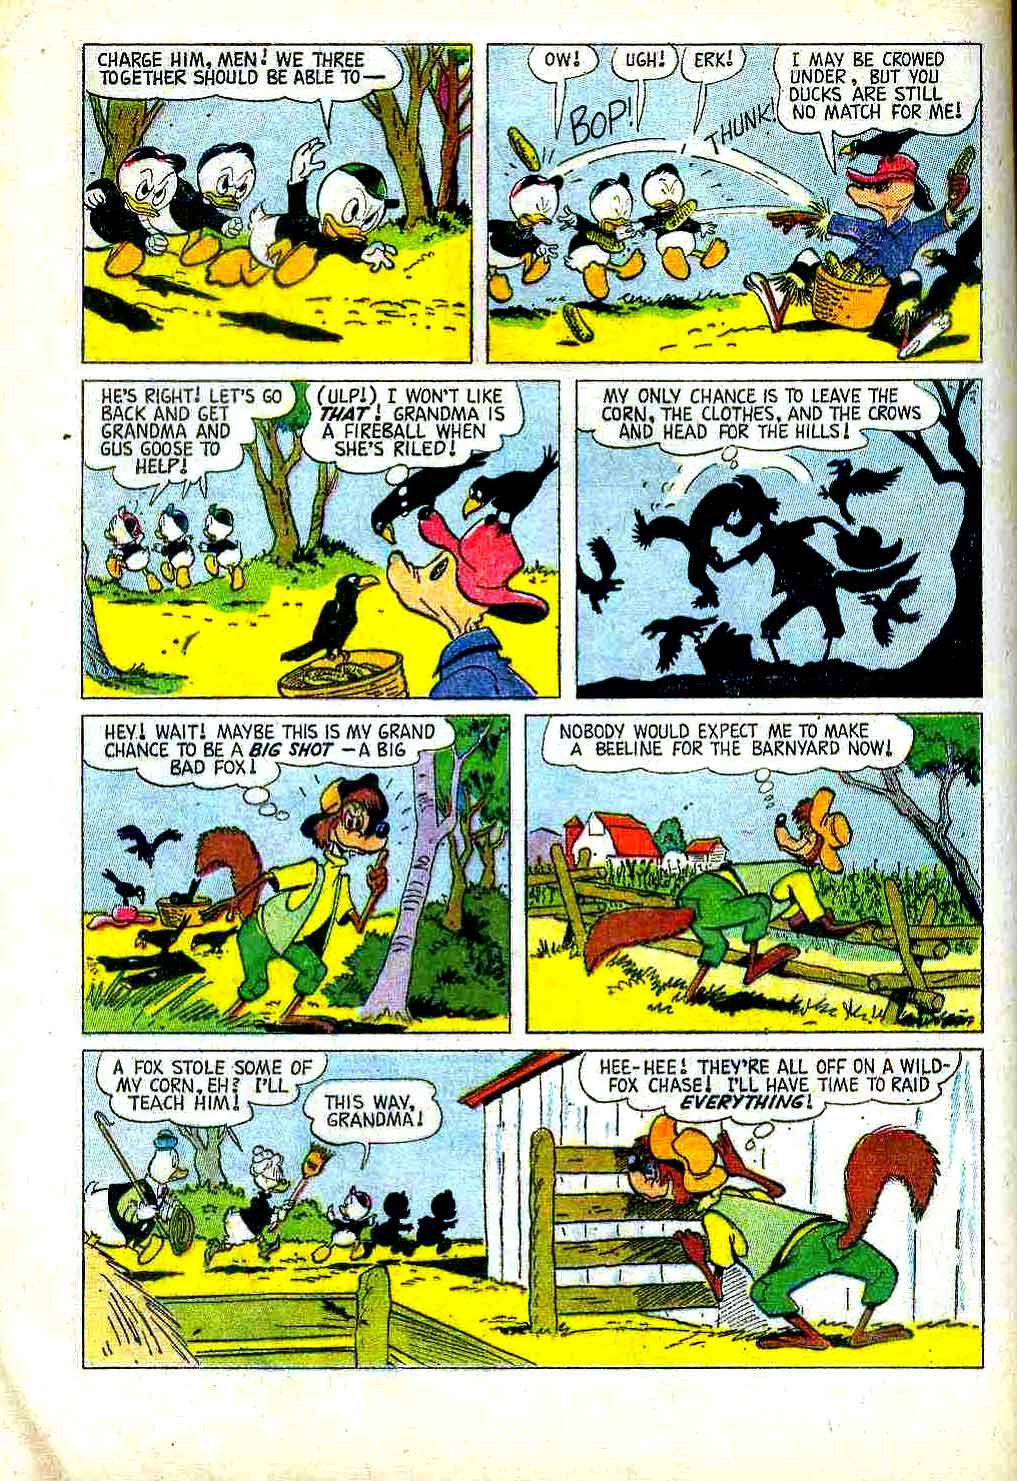 Grandma Duck's Farm Friends #1010 dell 1950s comic book page by Carl Barks